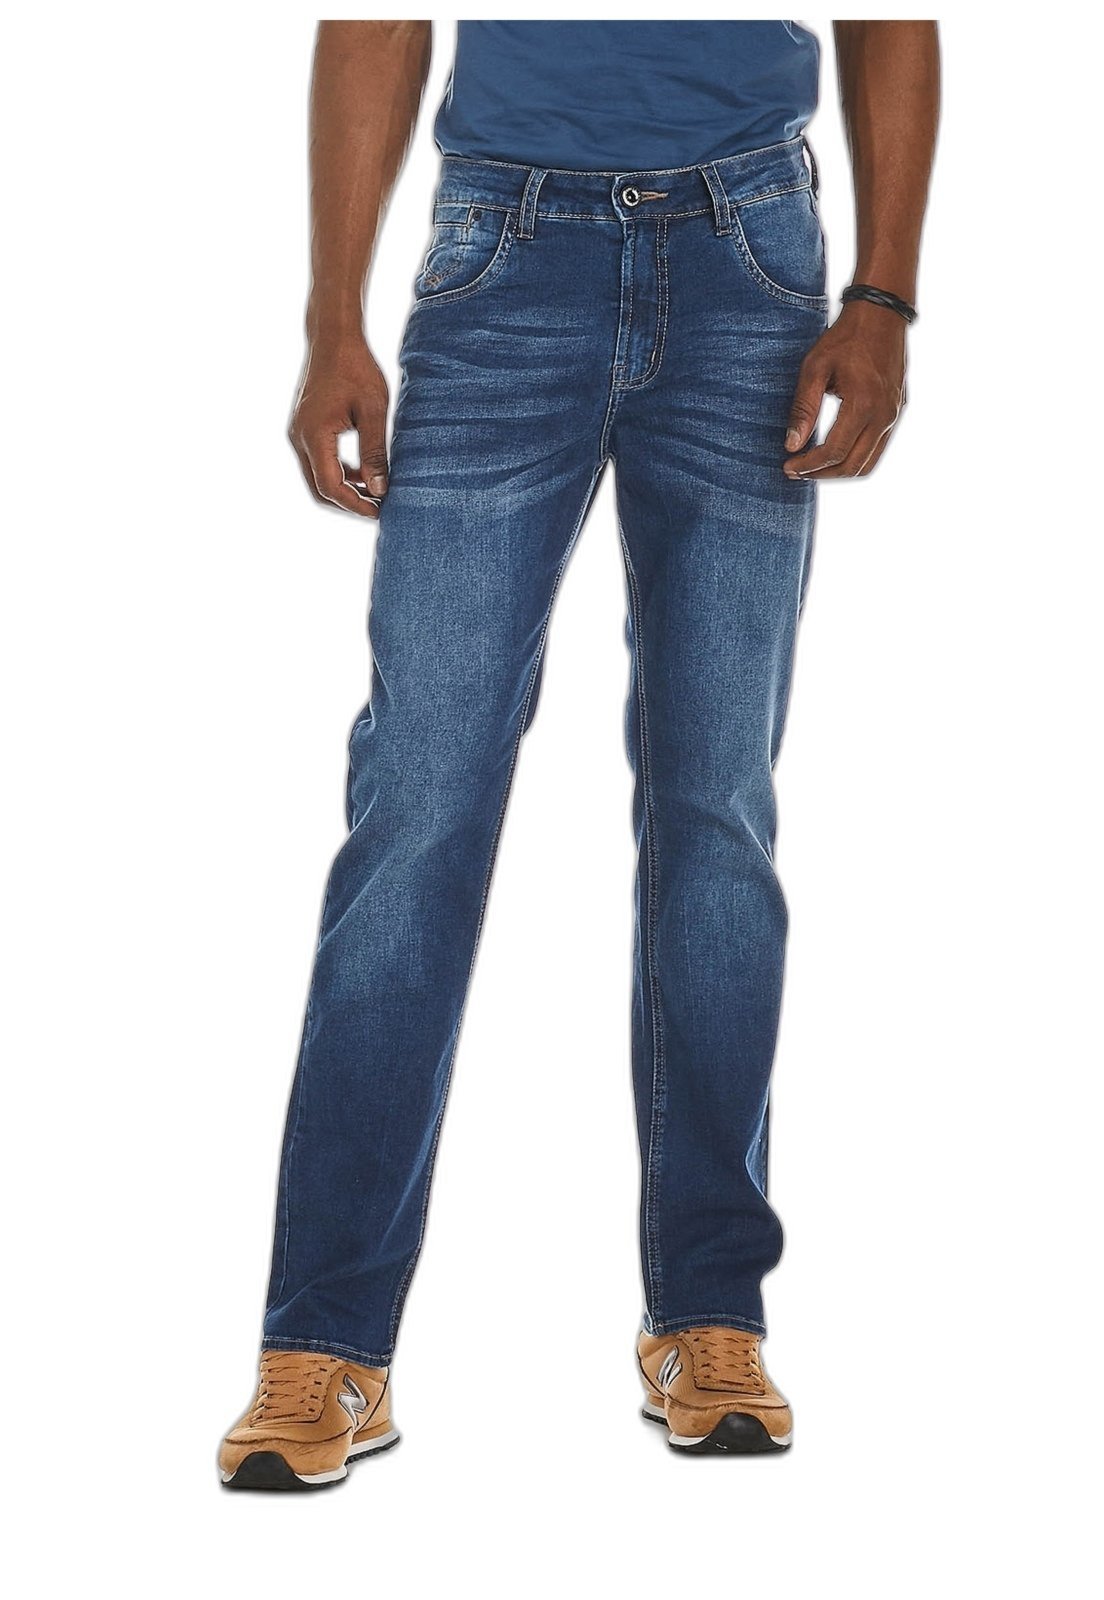 Will Excursion Annual Calcas Jeans Denuncia - Compre agora online | Dafiti Brasil